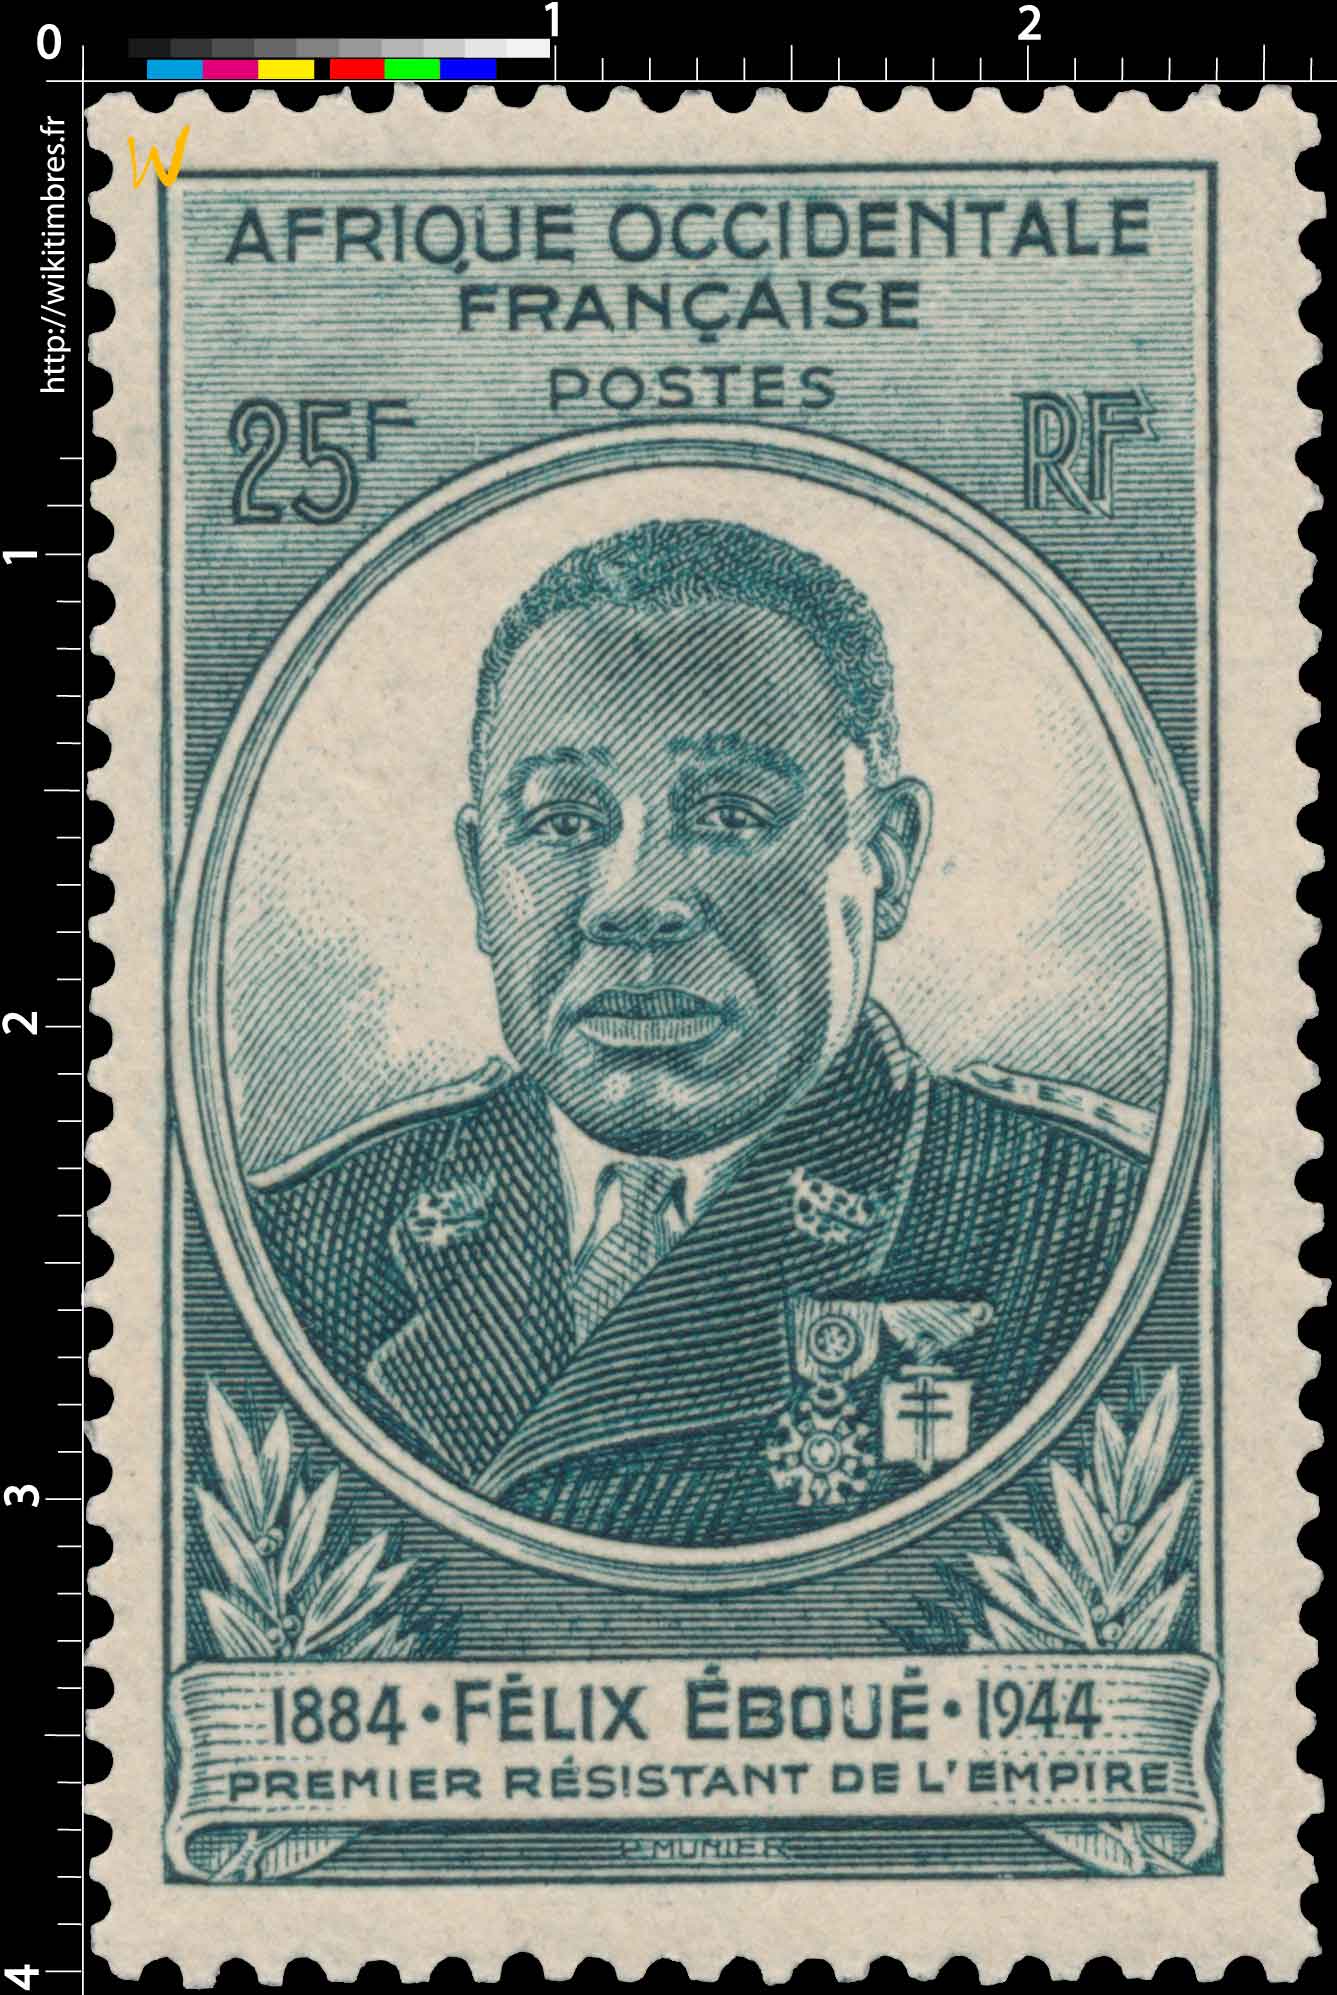 Afrique Occidentale Française - Félix Eboué 1884-1944 premier résistant de l'empire